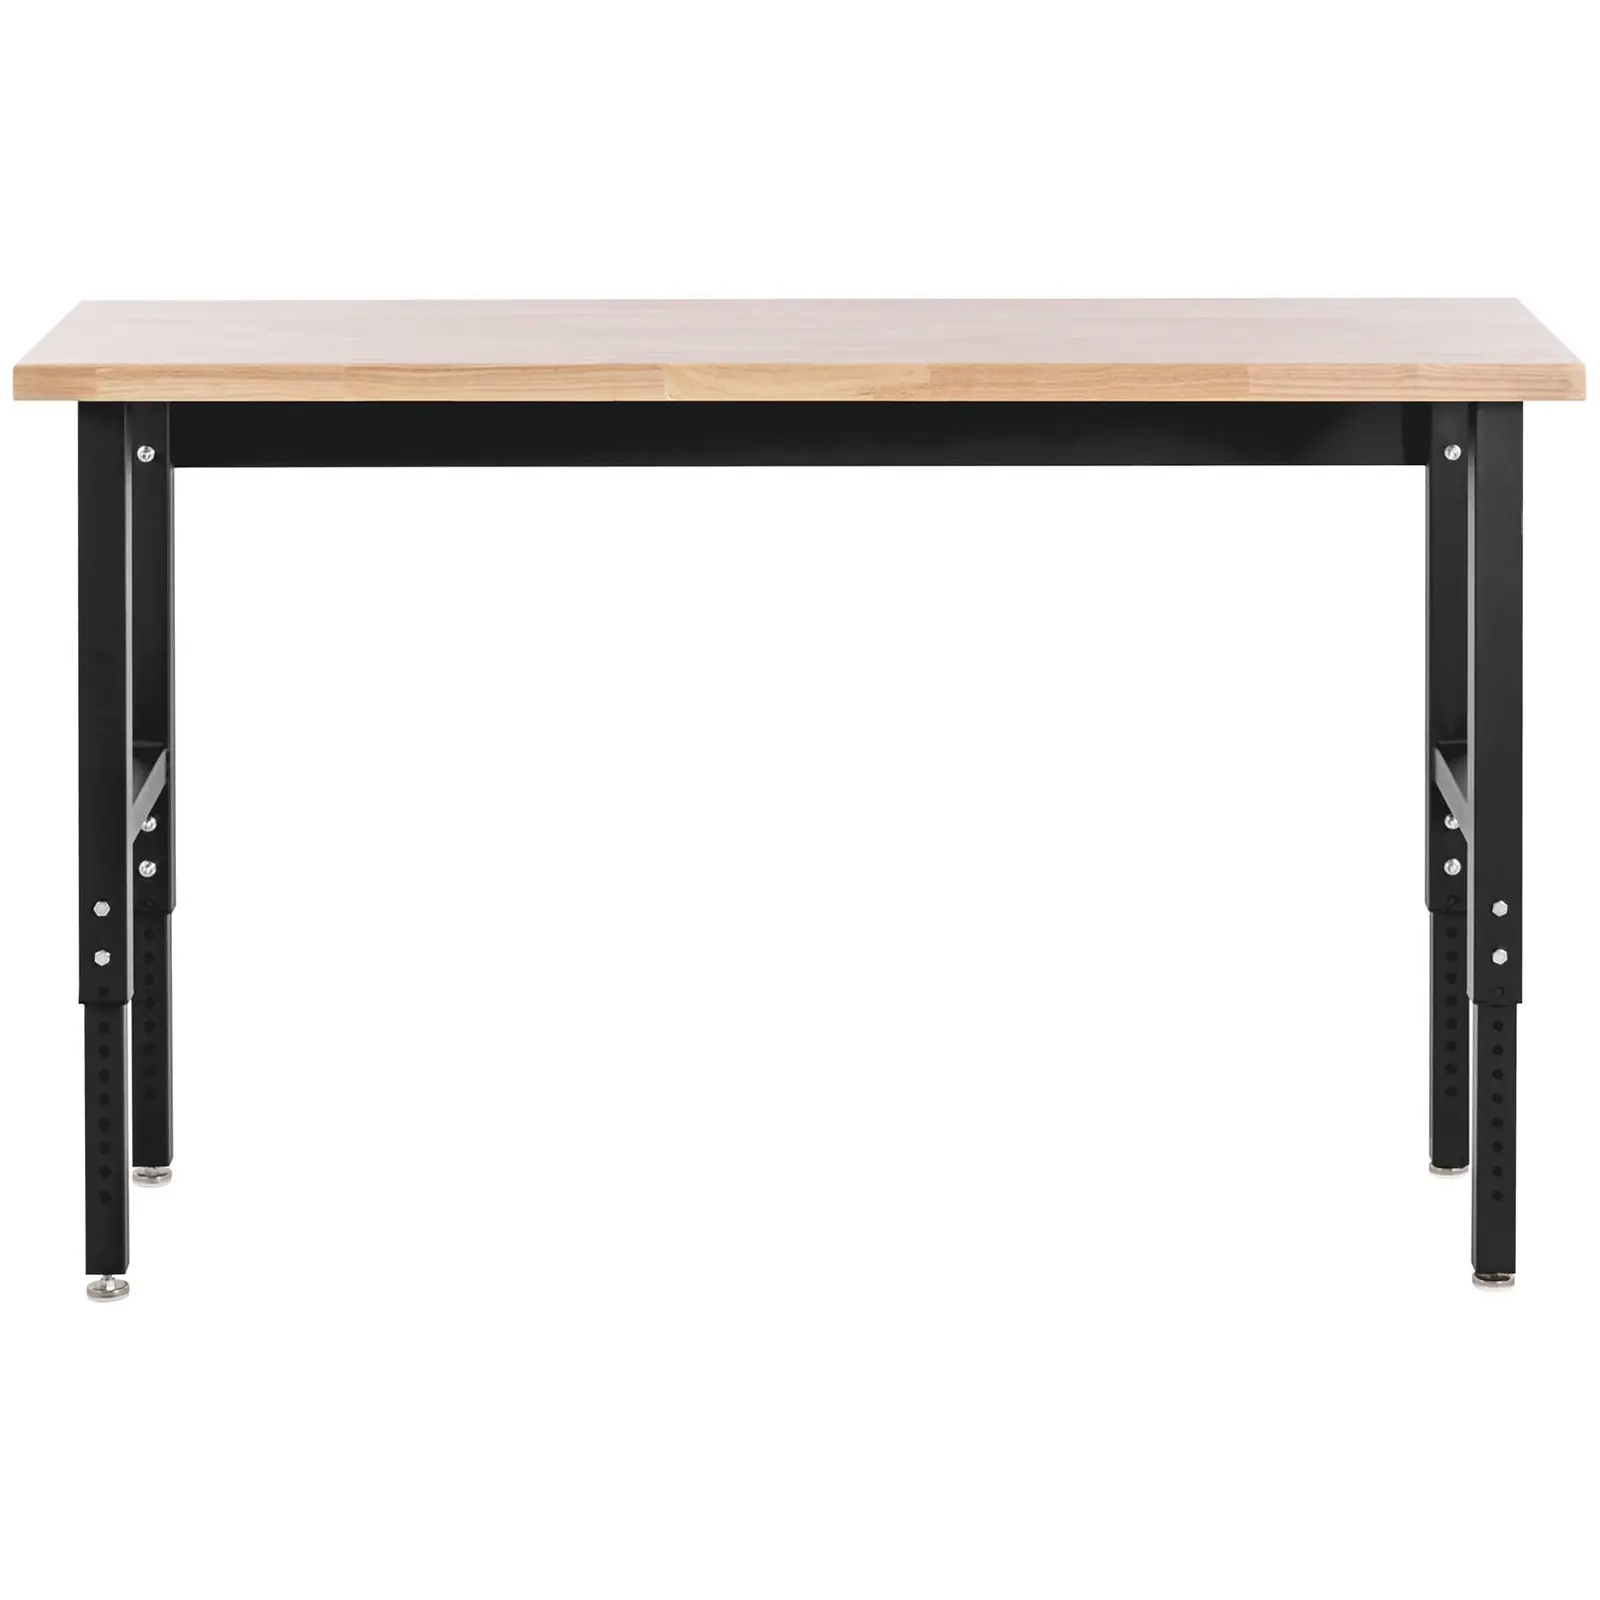 Stół warsztatowy - 155 x 51 cm - regulowana wysokość 72,5-106,7 cm - 680 kg